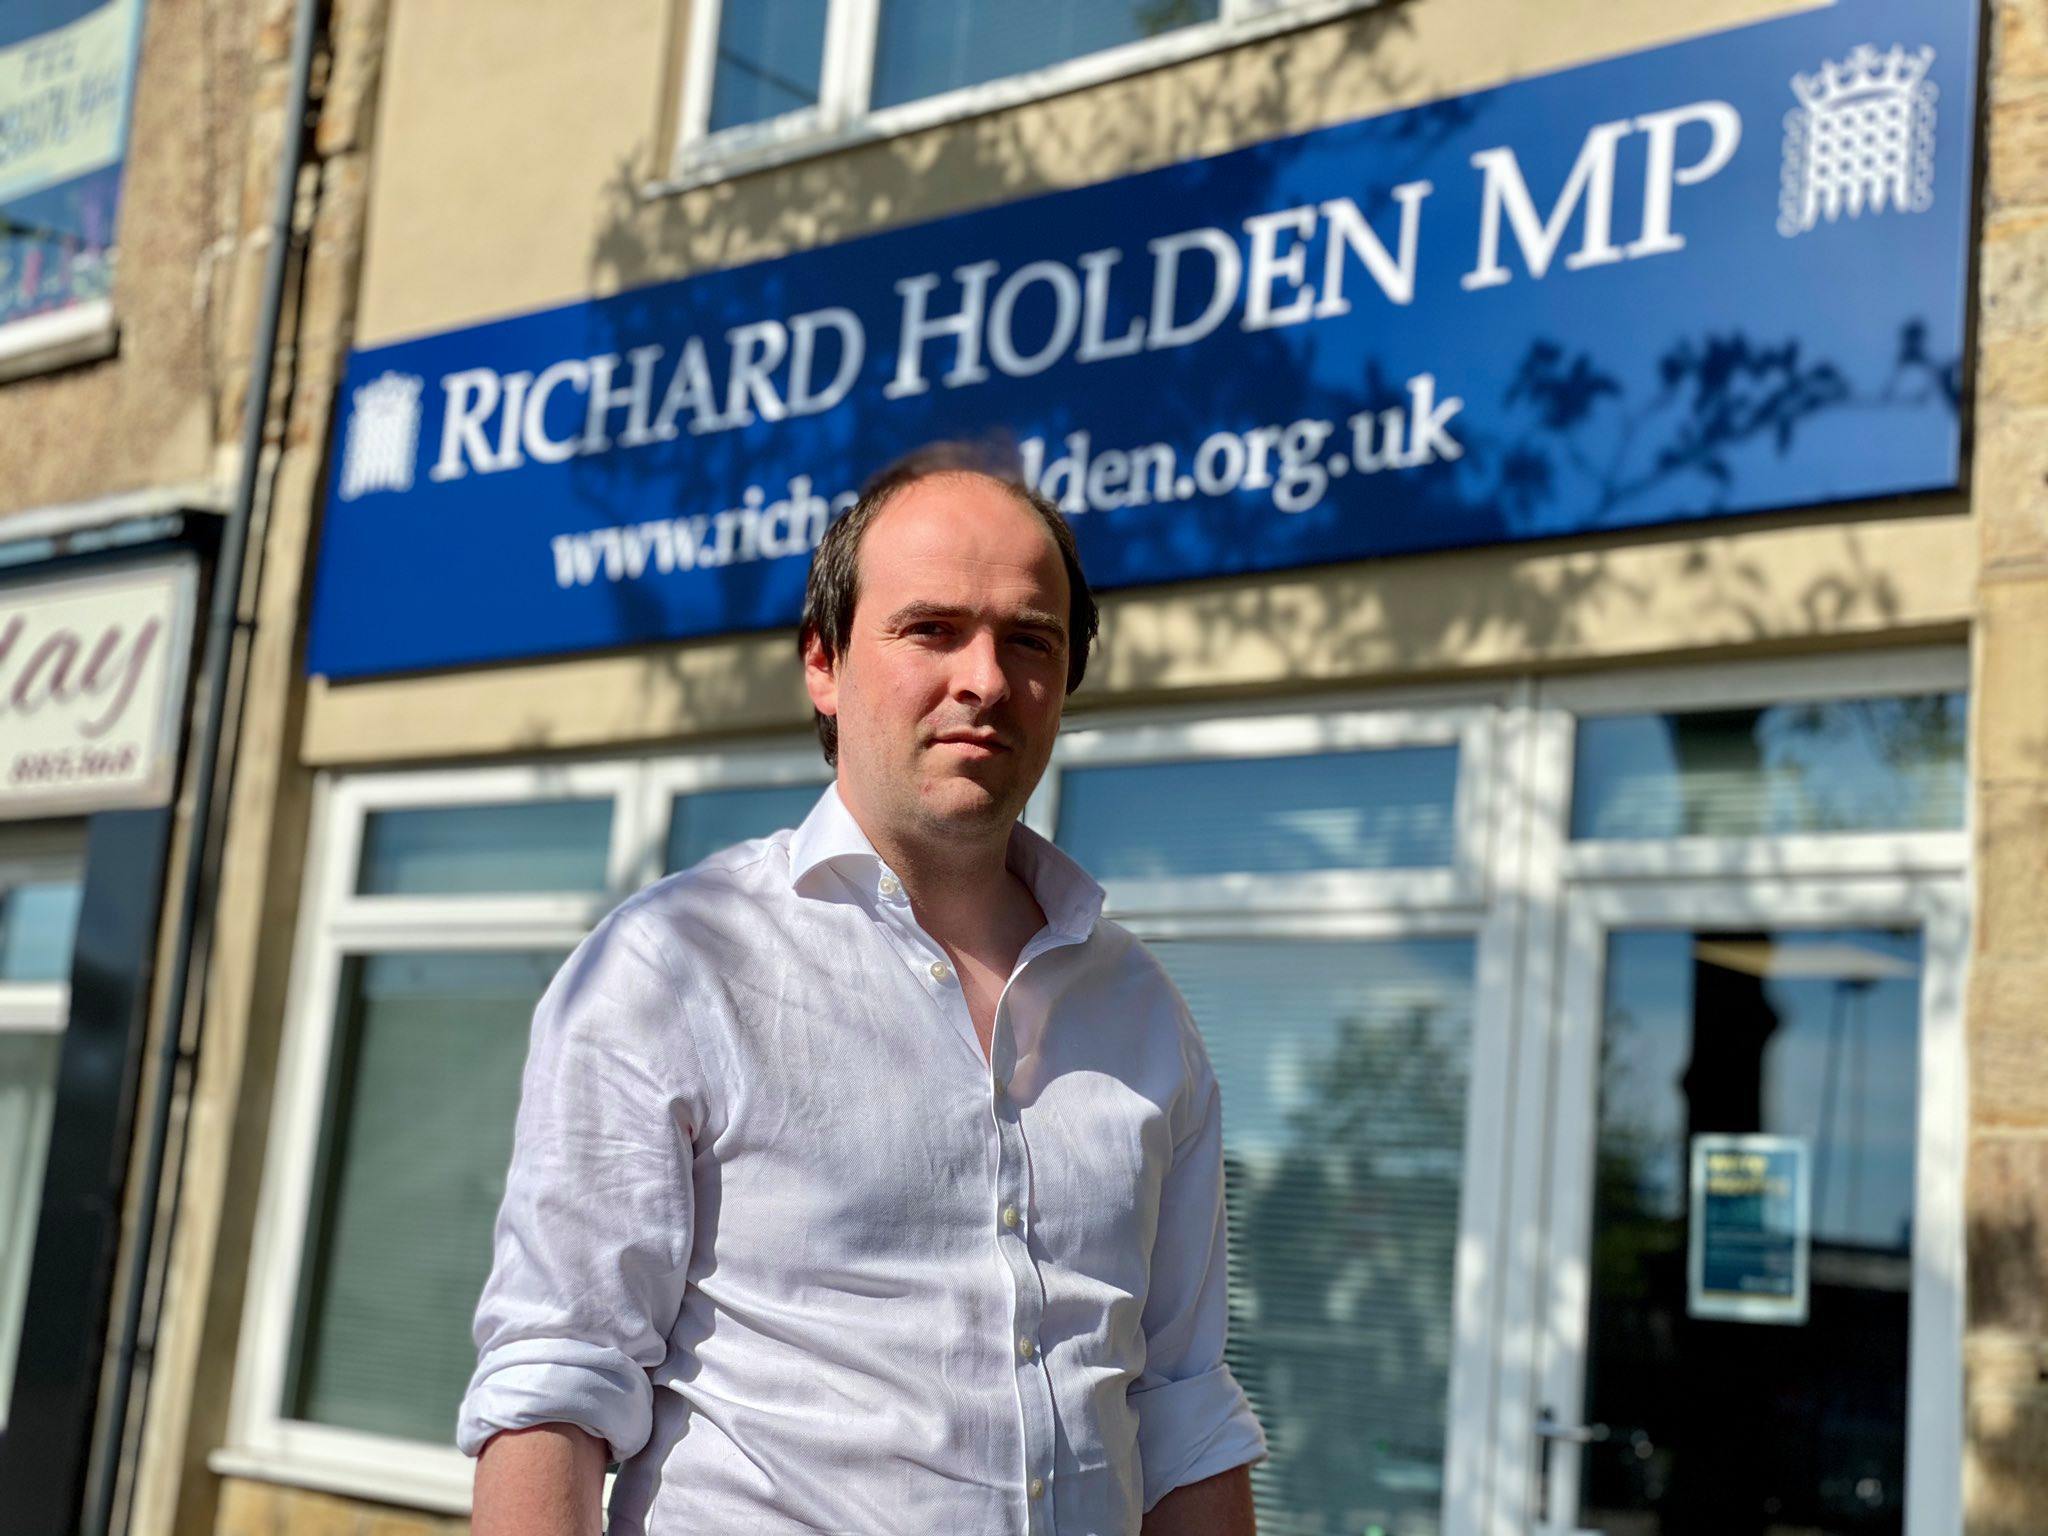 North-West Durham MP Richard Holden 